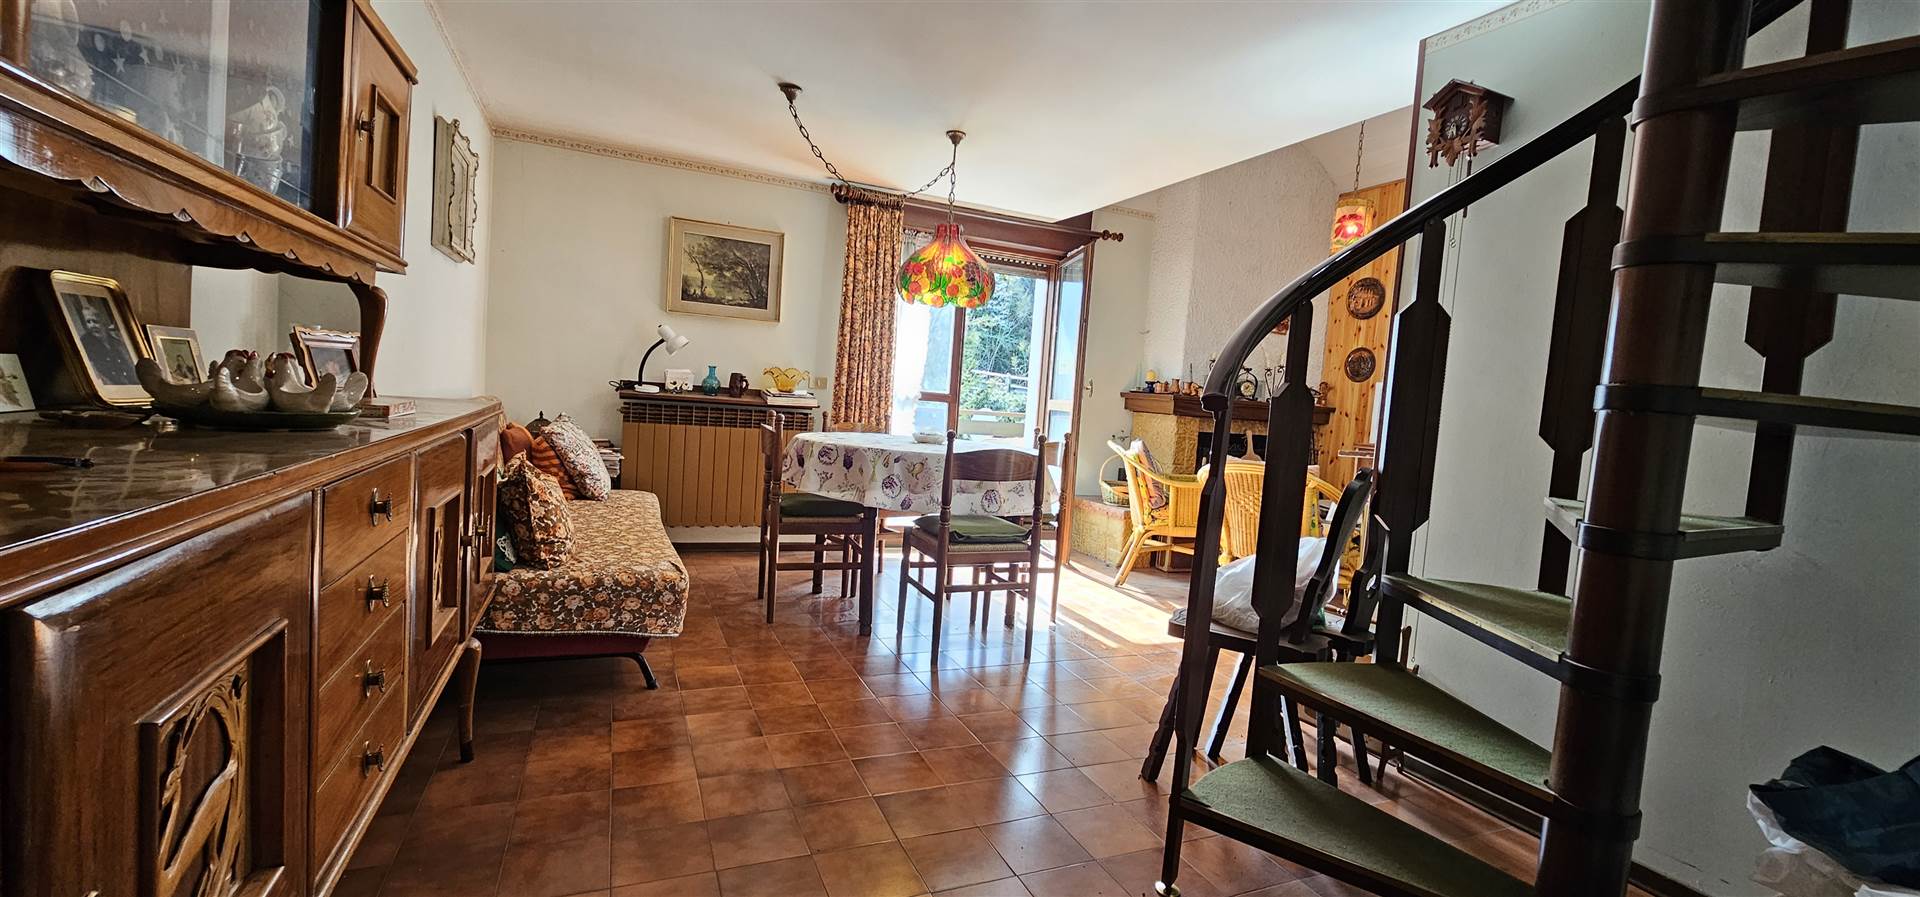 Appartamento in vendita a Edolo, 6 locali, prezzo € 95.000 | PortaleAgenzieImmobiliari.it